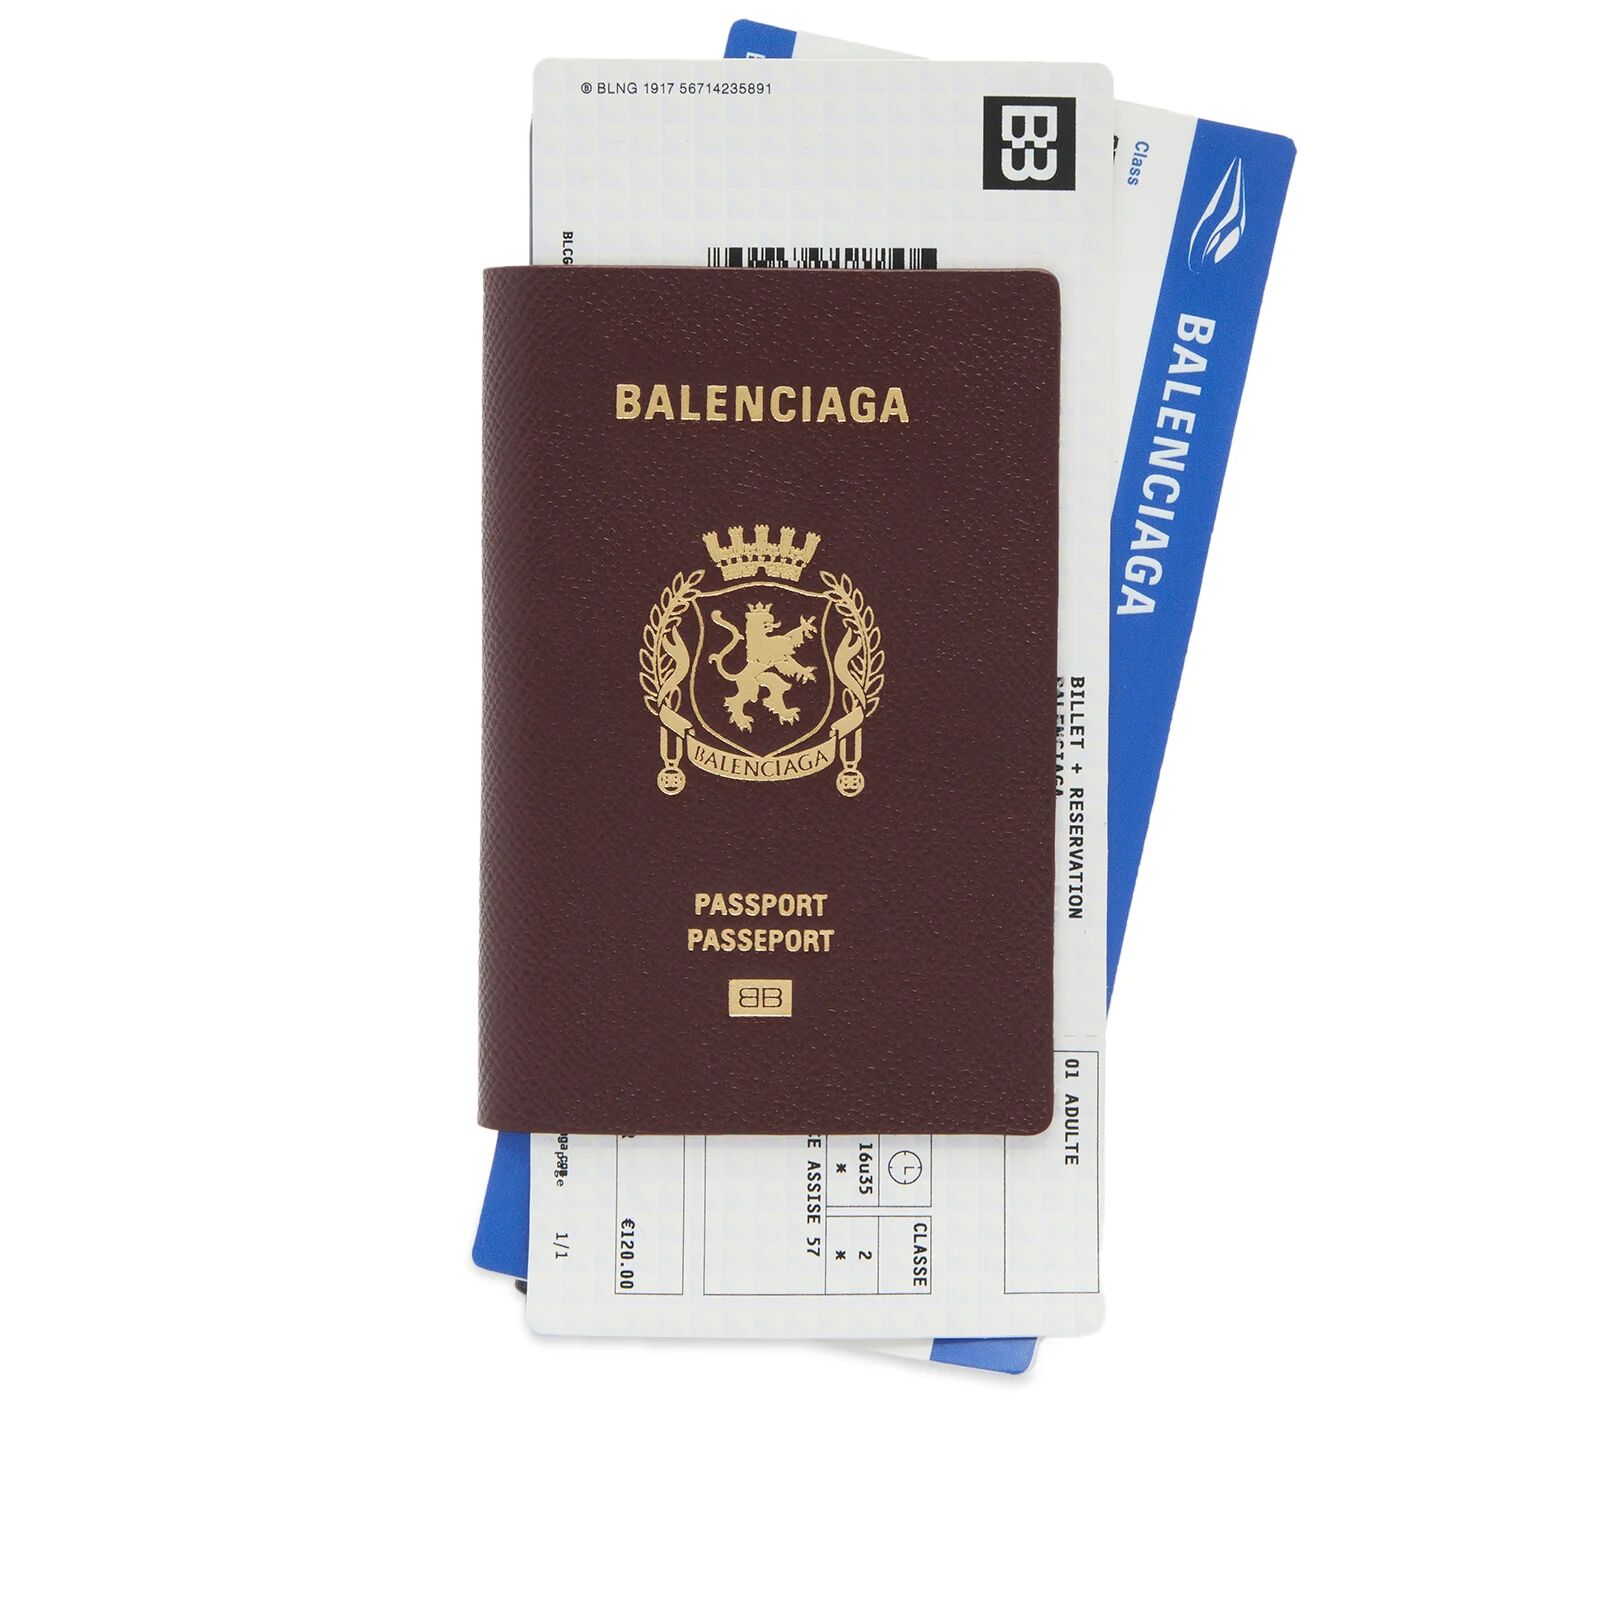 Balenciaga Men's Passport Zip Wallet in Passport Burgundy